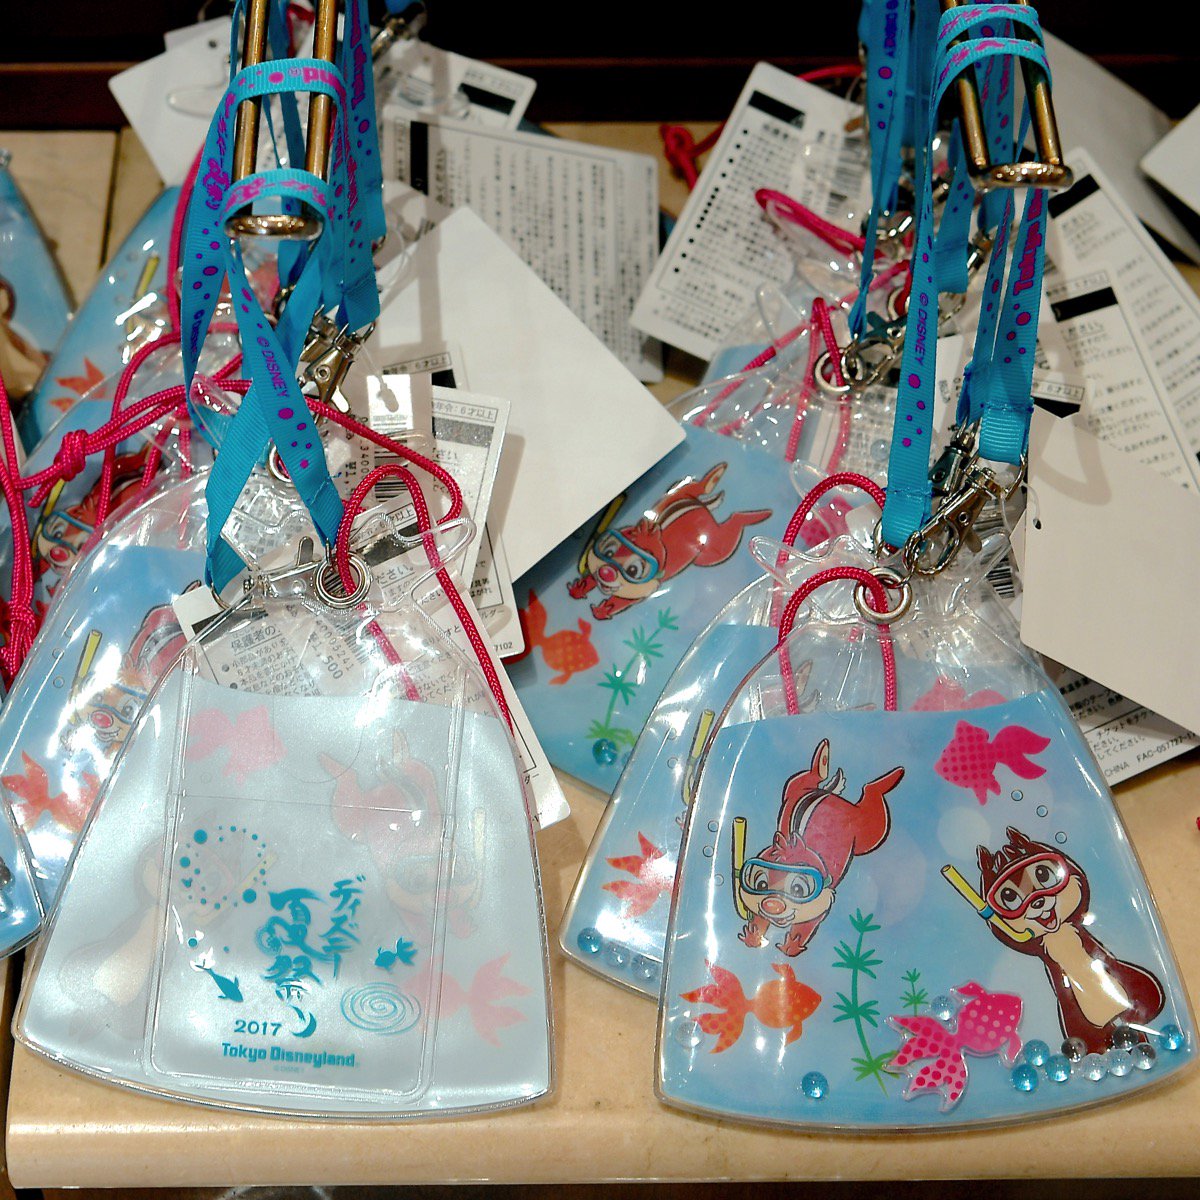 Mezzomikiのディズニーブログ Na Twitteru 縁日モチーフのチップ デール 東京ディズニーランド ディズニー夏祭り 17 スペシャルグッズ パスケース スマートフォンケース 防水ケースの3種類が本日より発売されました 詳しくは T Co V3myfllwzc